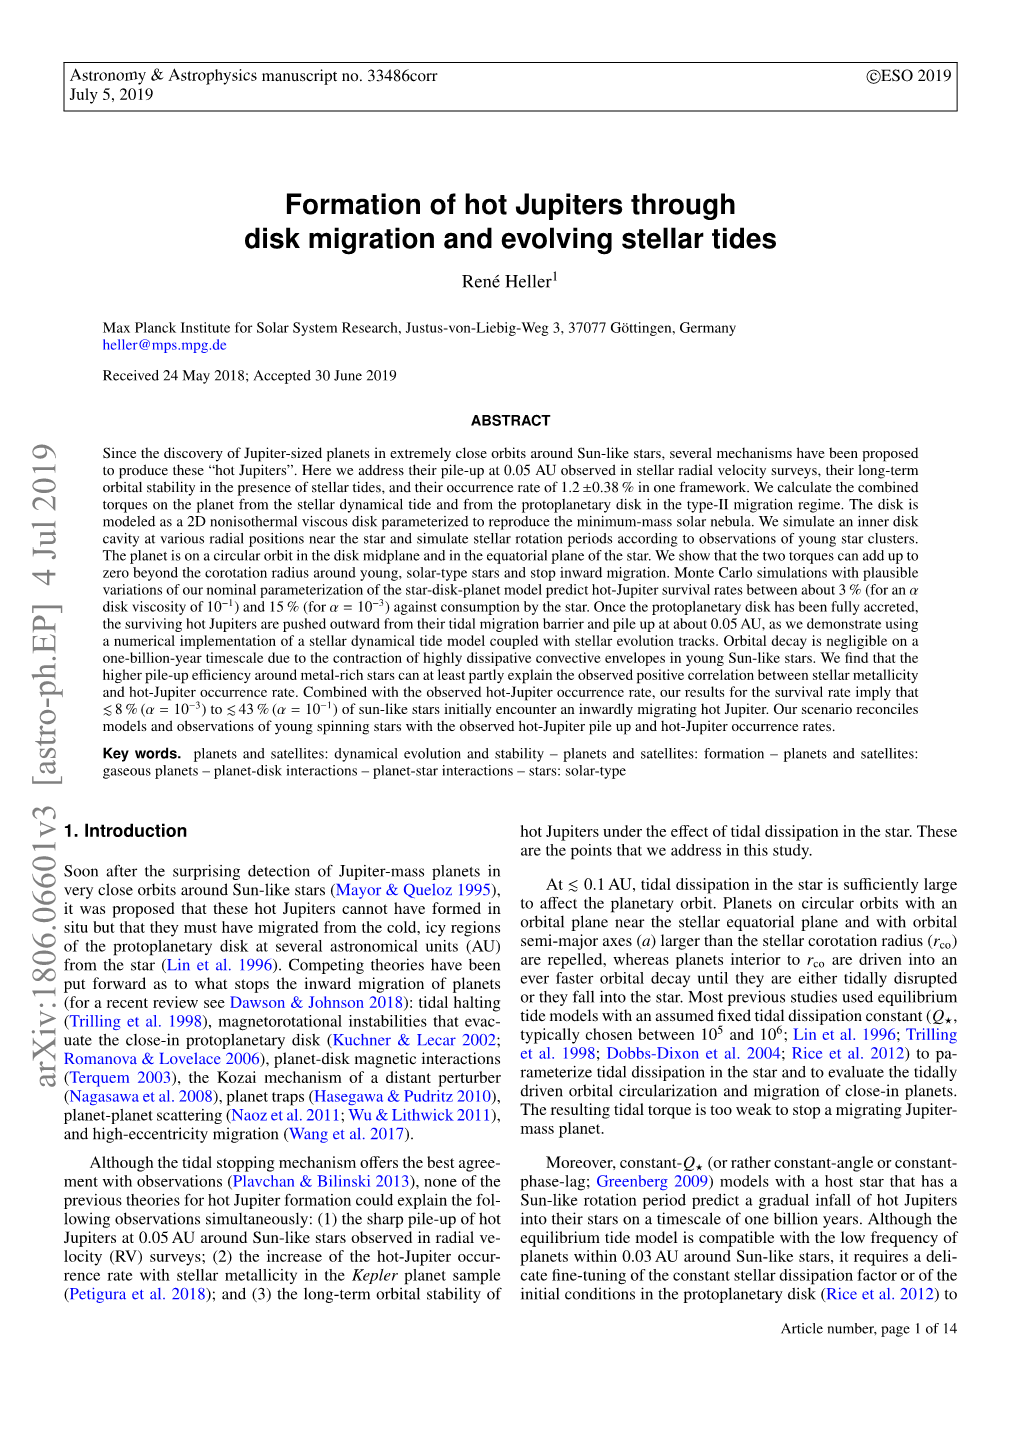 Formation of Hot Jupiters Through Disk Migration and Evolving Stellar Tides René Heller1